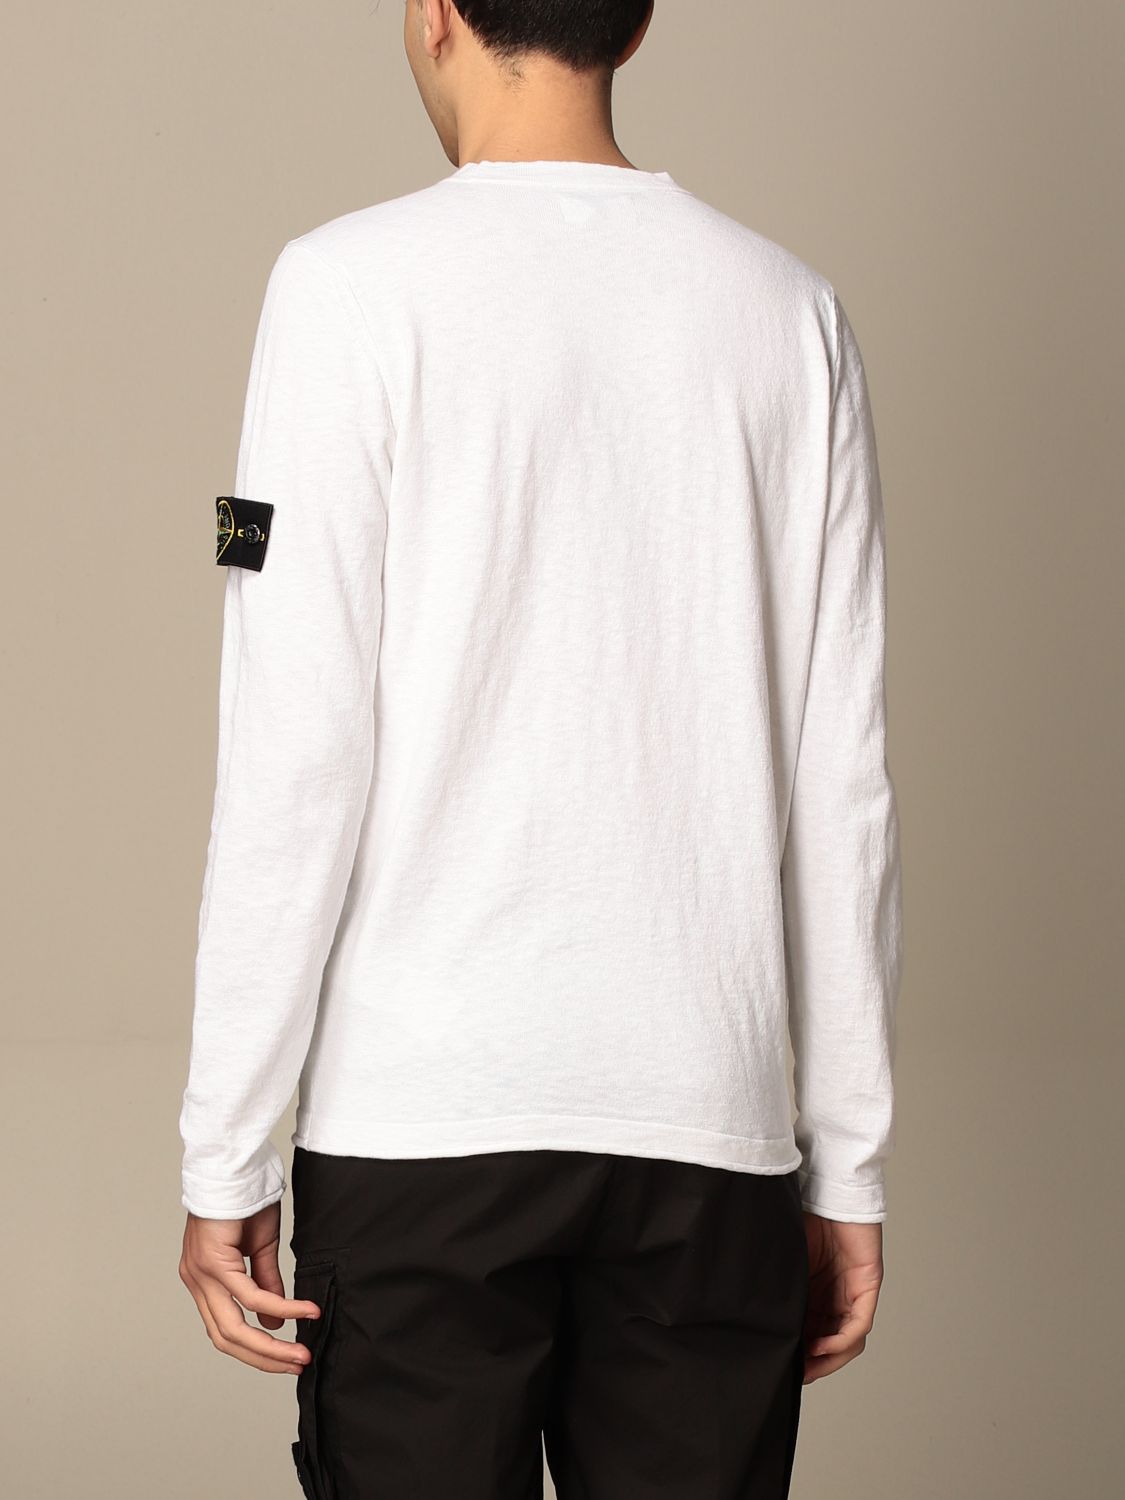 STONE ISLAND: basic sweater with logo - White | Sweater Stone 